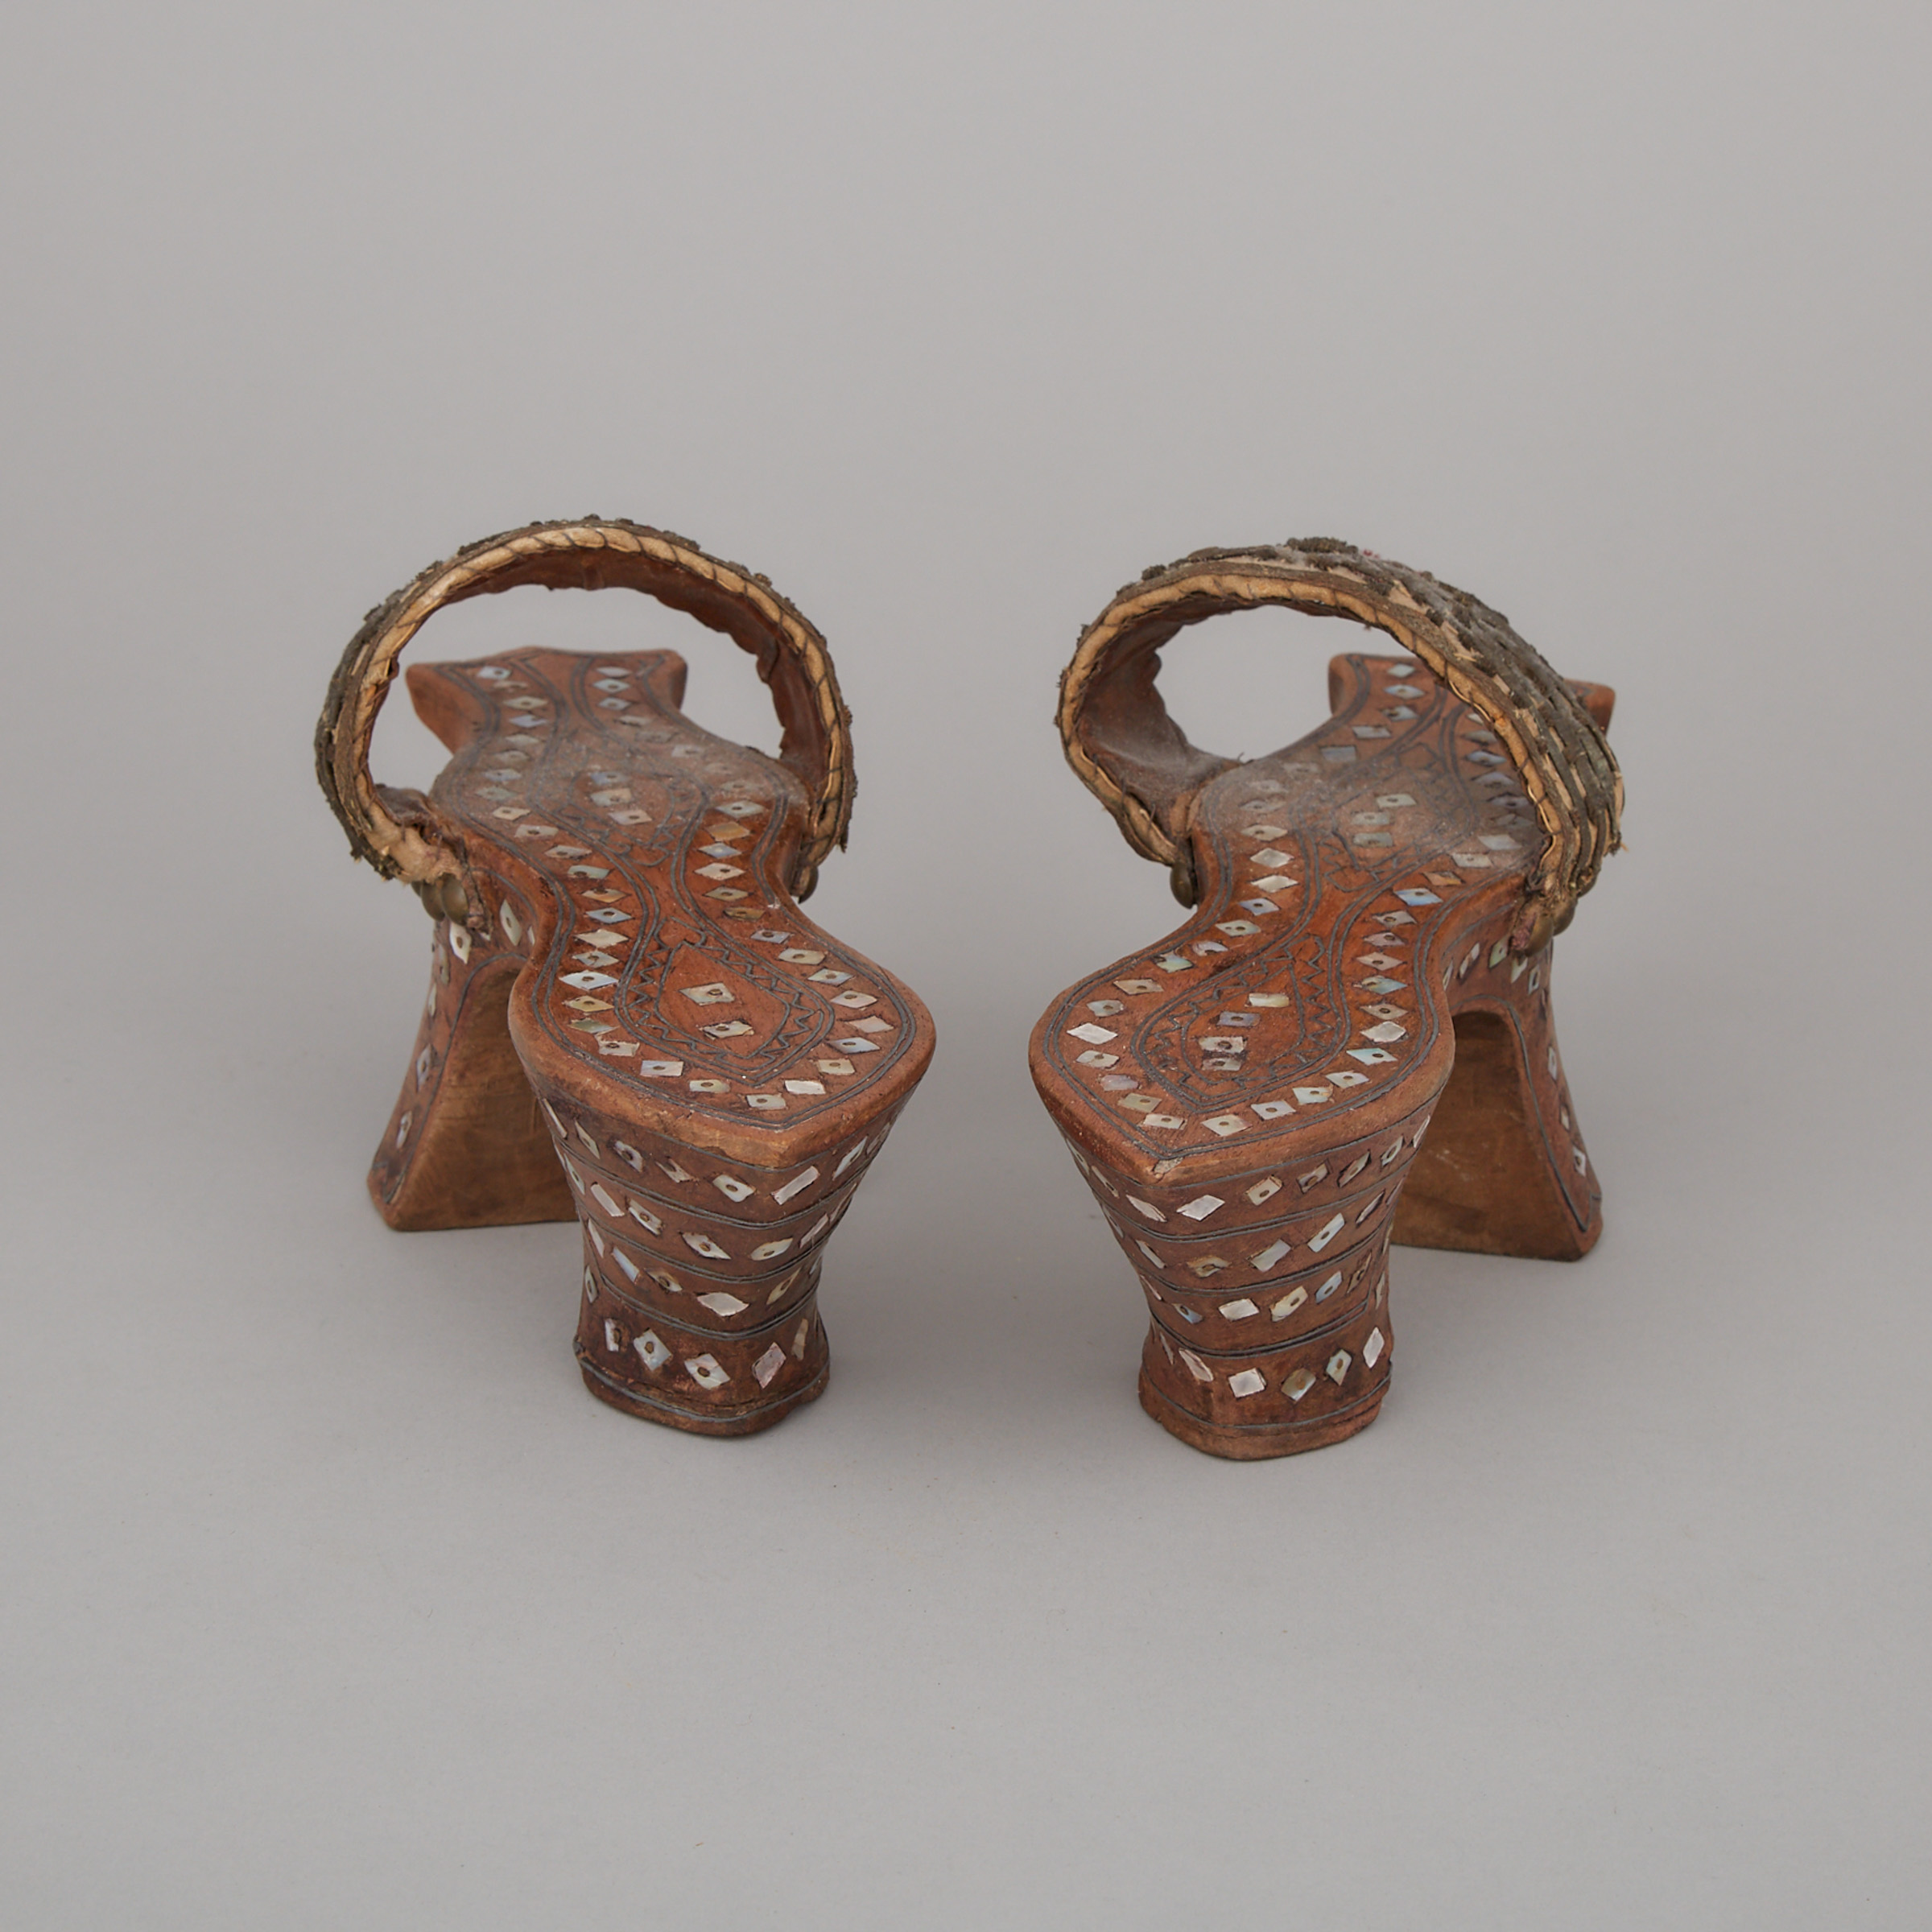 Pair of Japanese Teak Geta Sandals, c.1900